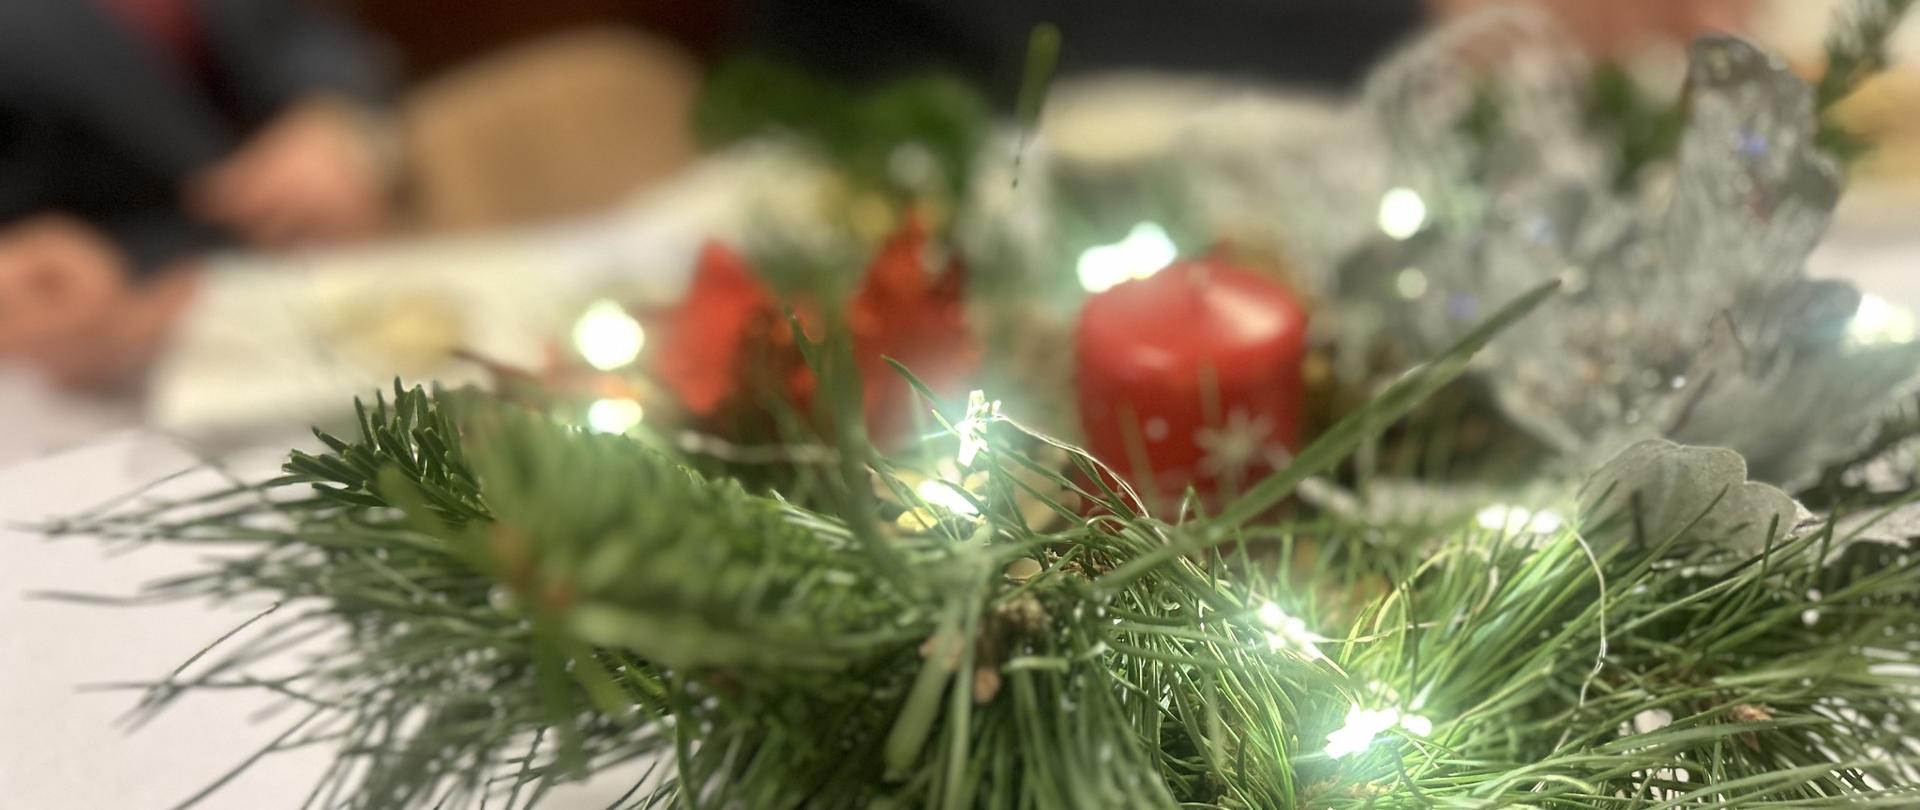 stroik bożonarodzeniowy z czerwoną świecą stojący na stole z białym obrusem